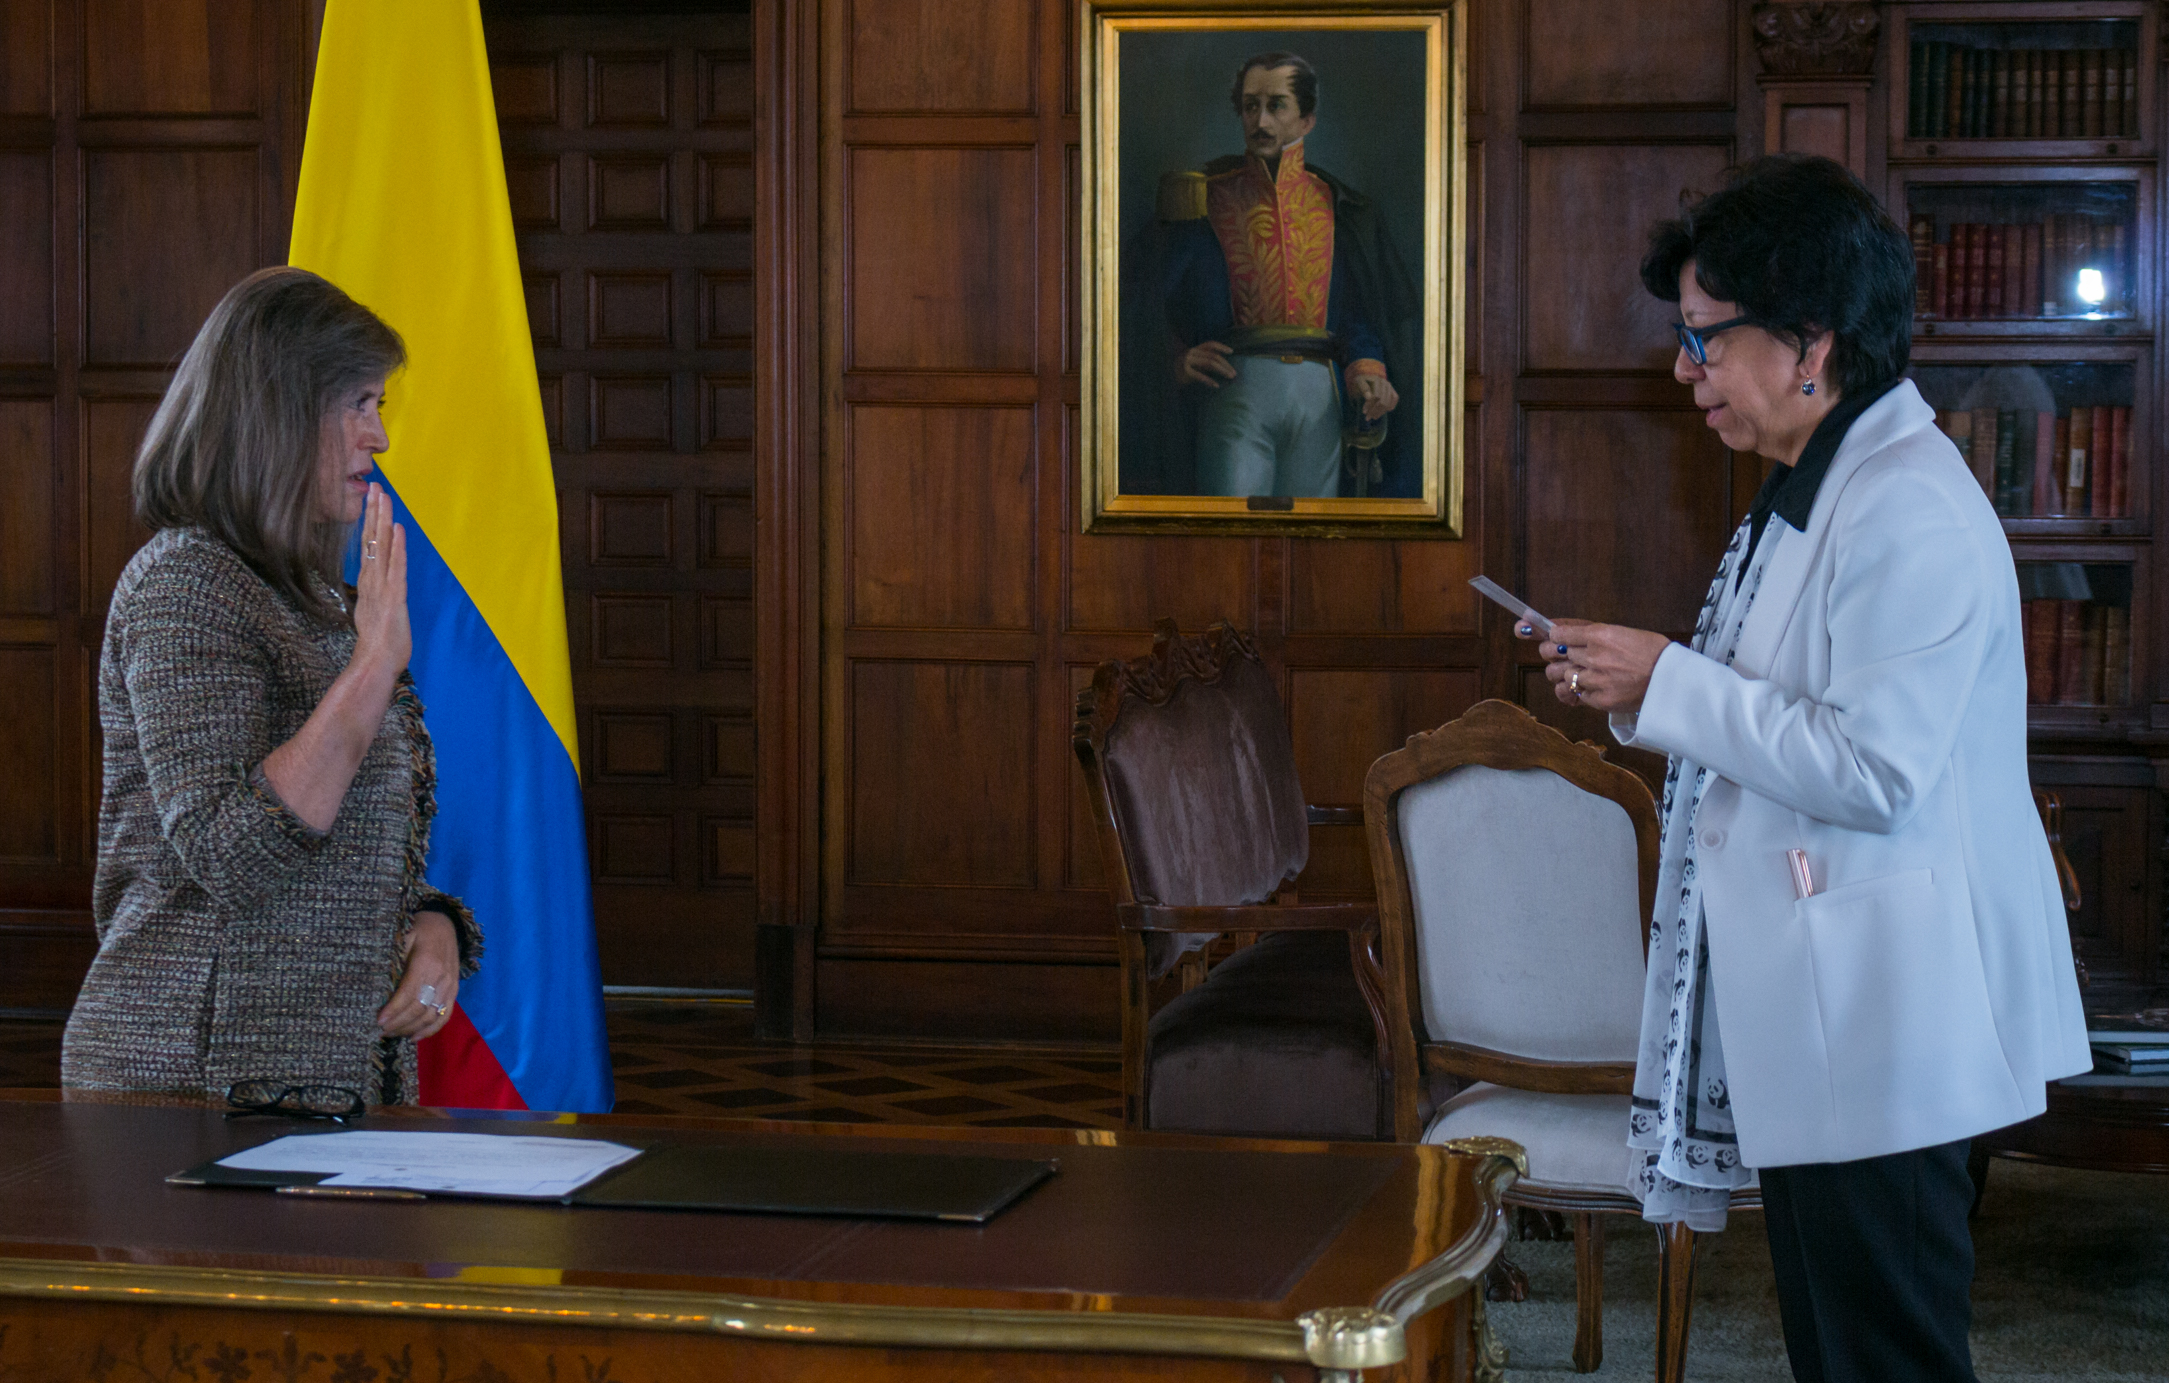 Embajadora de Carrera Diplomática, Ana María Prieto Abad, representará a Colombia ante Tailandia 